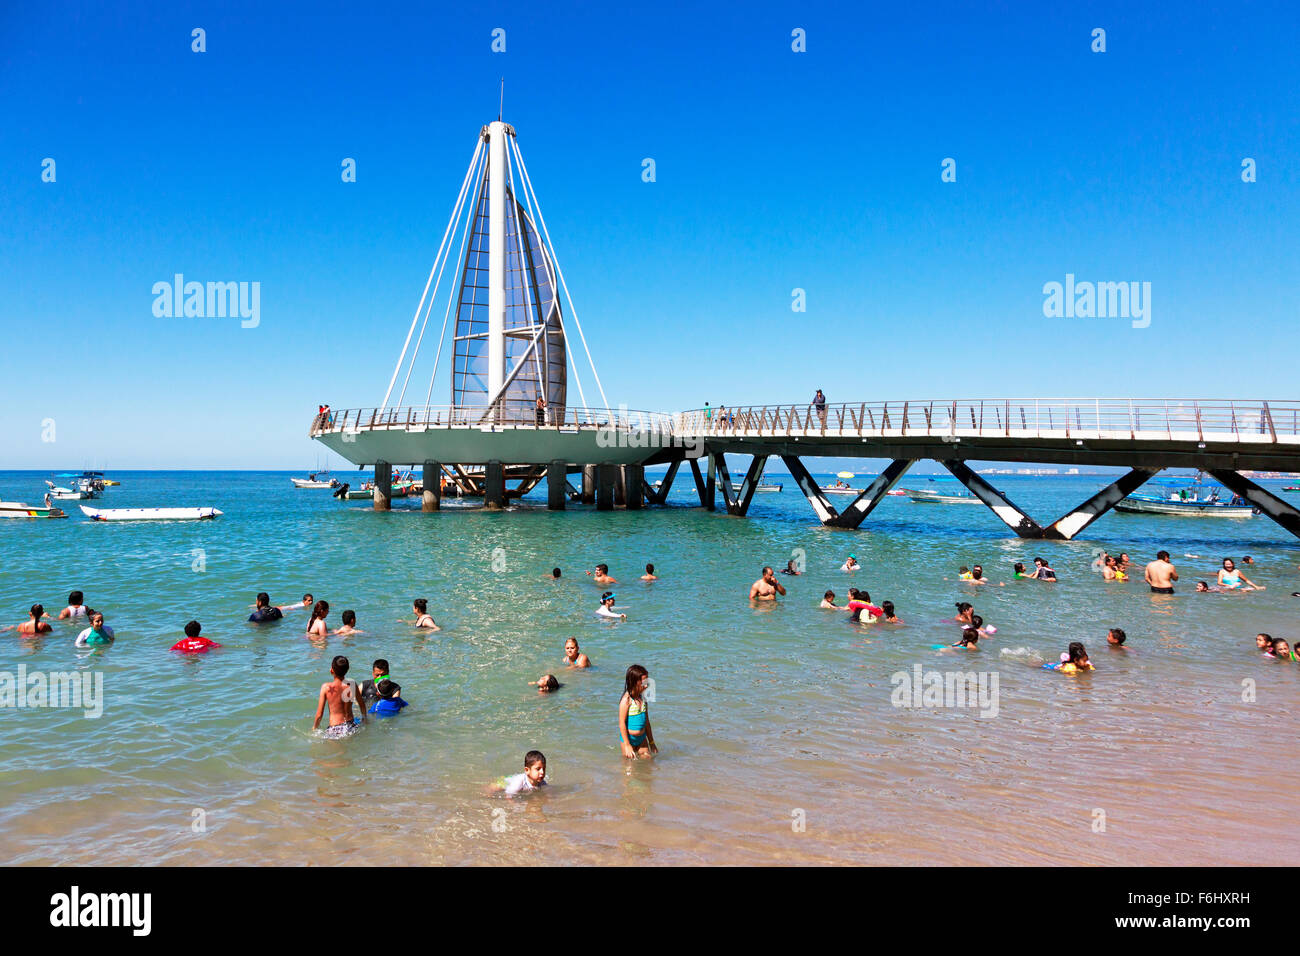 Pier of Los Muertos in Zone Romantica, Puerto Vallarta, Mexico in the Bay of Banderas, Stock Photo